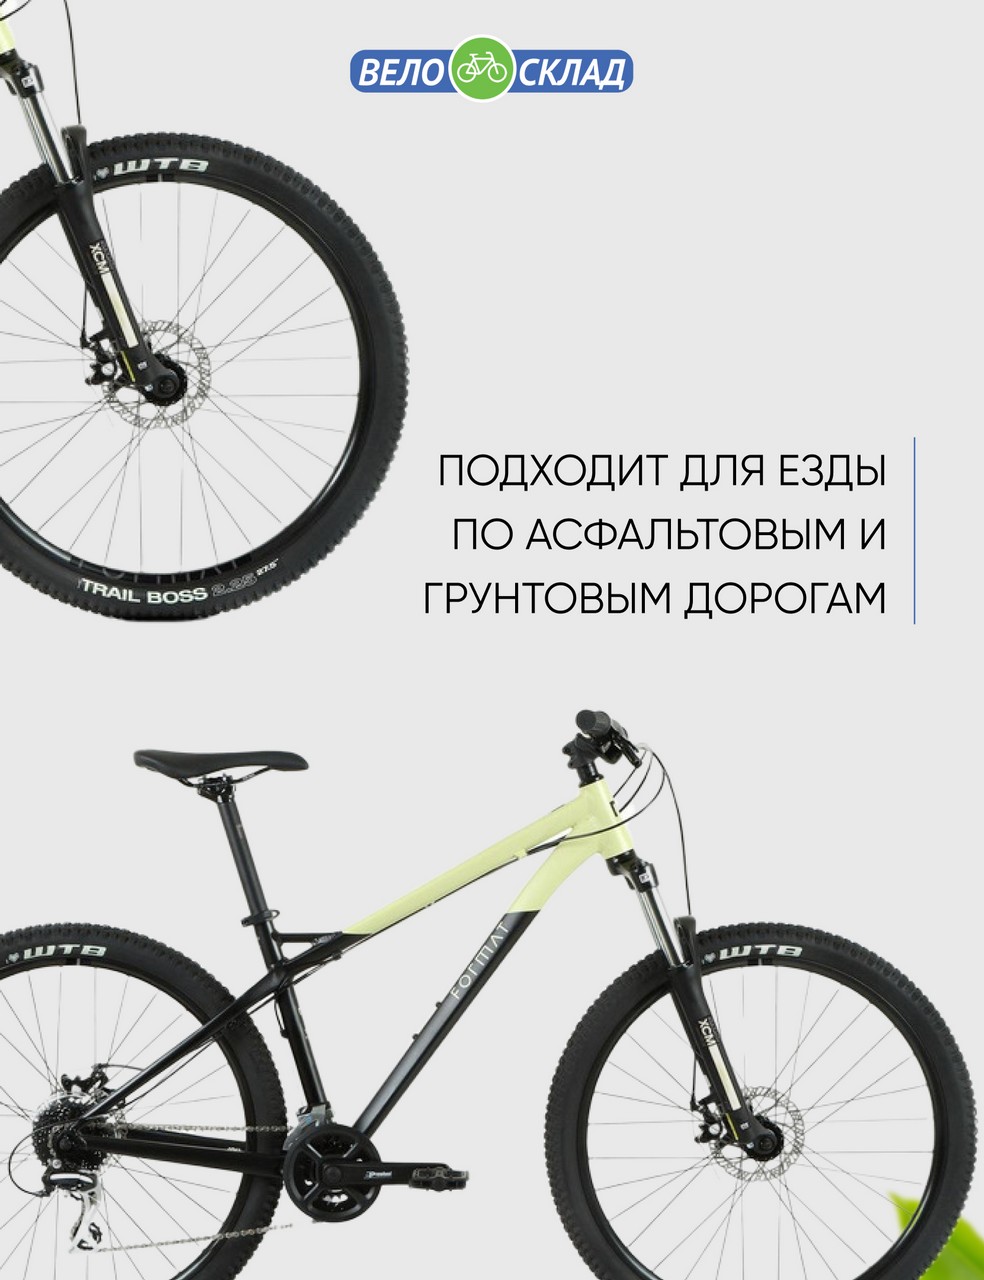 Горный велосипед Format 1315 27.5, год 2023, цвет Черный-Желтый, ростовка 15